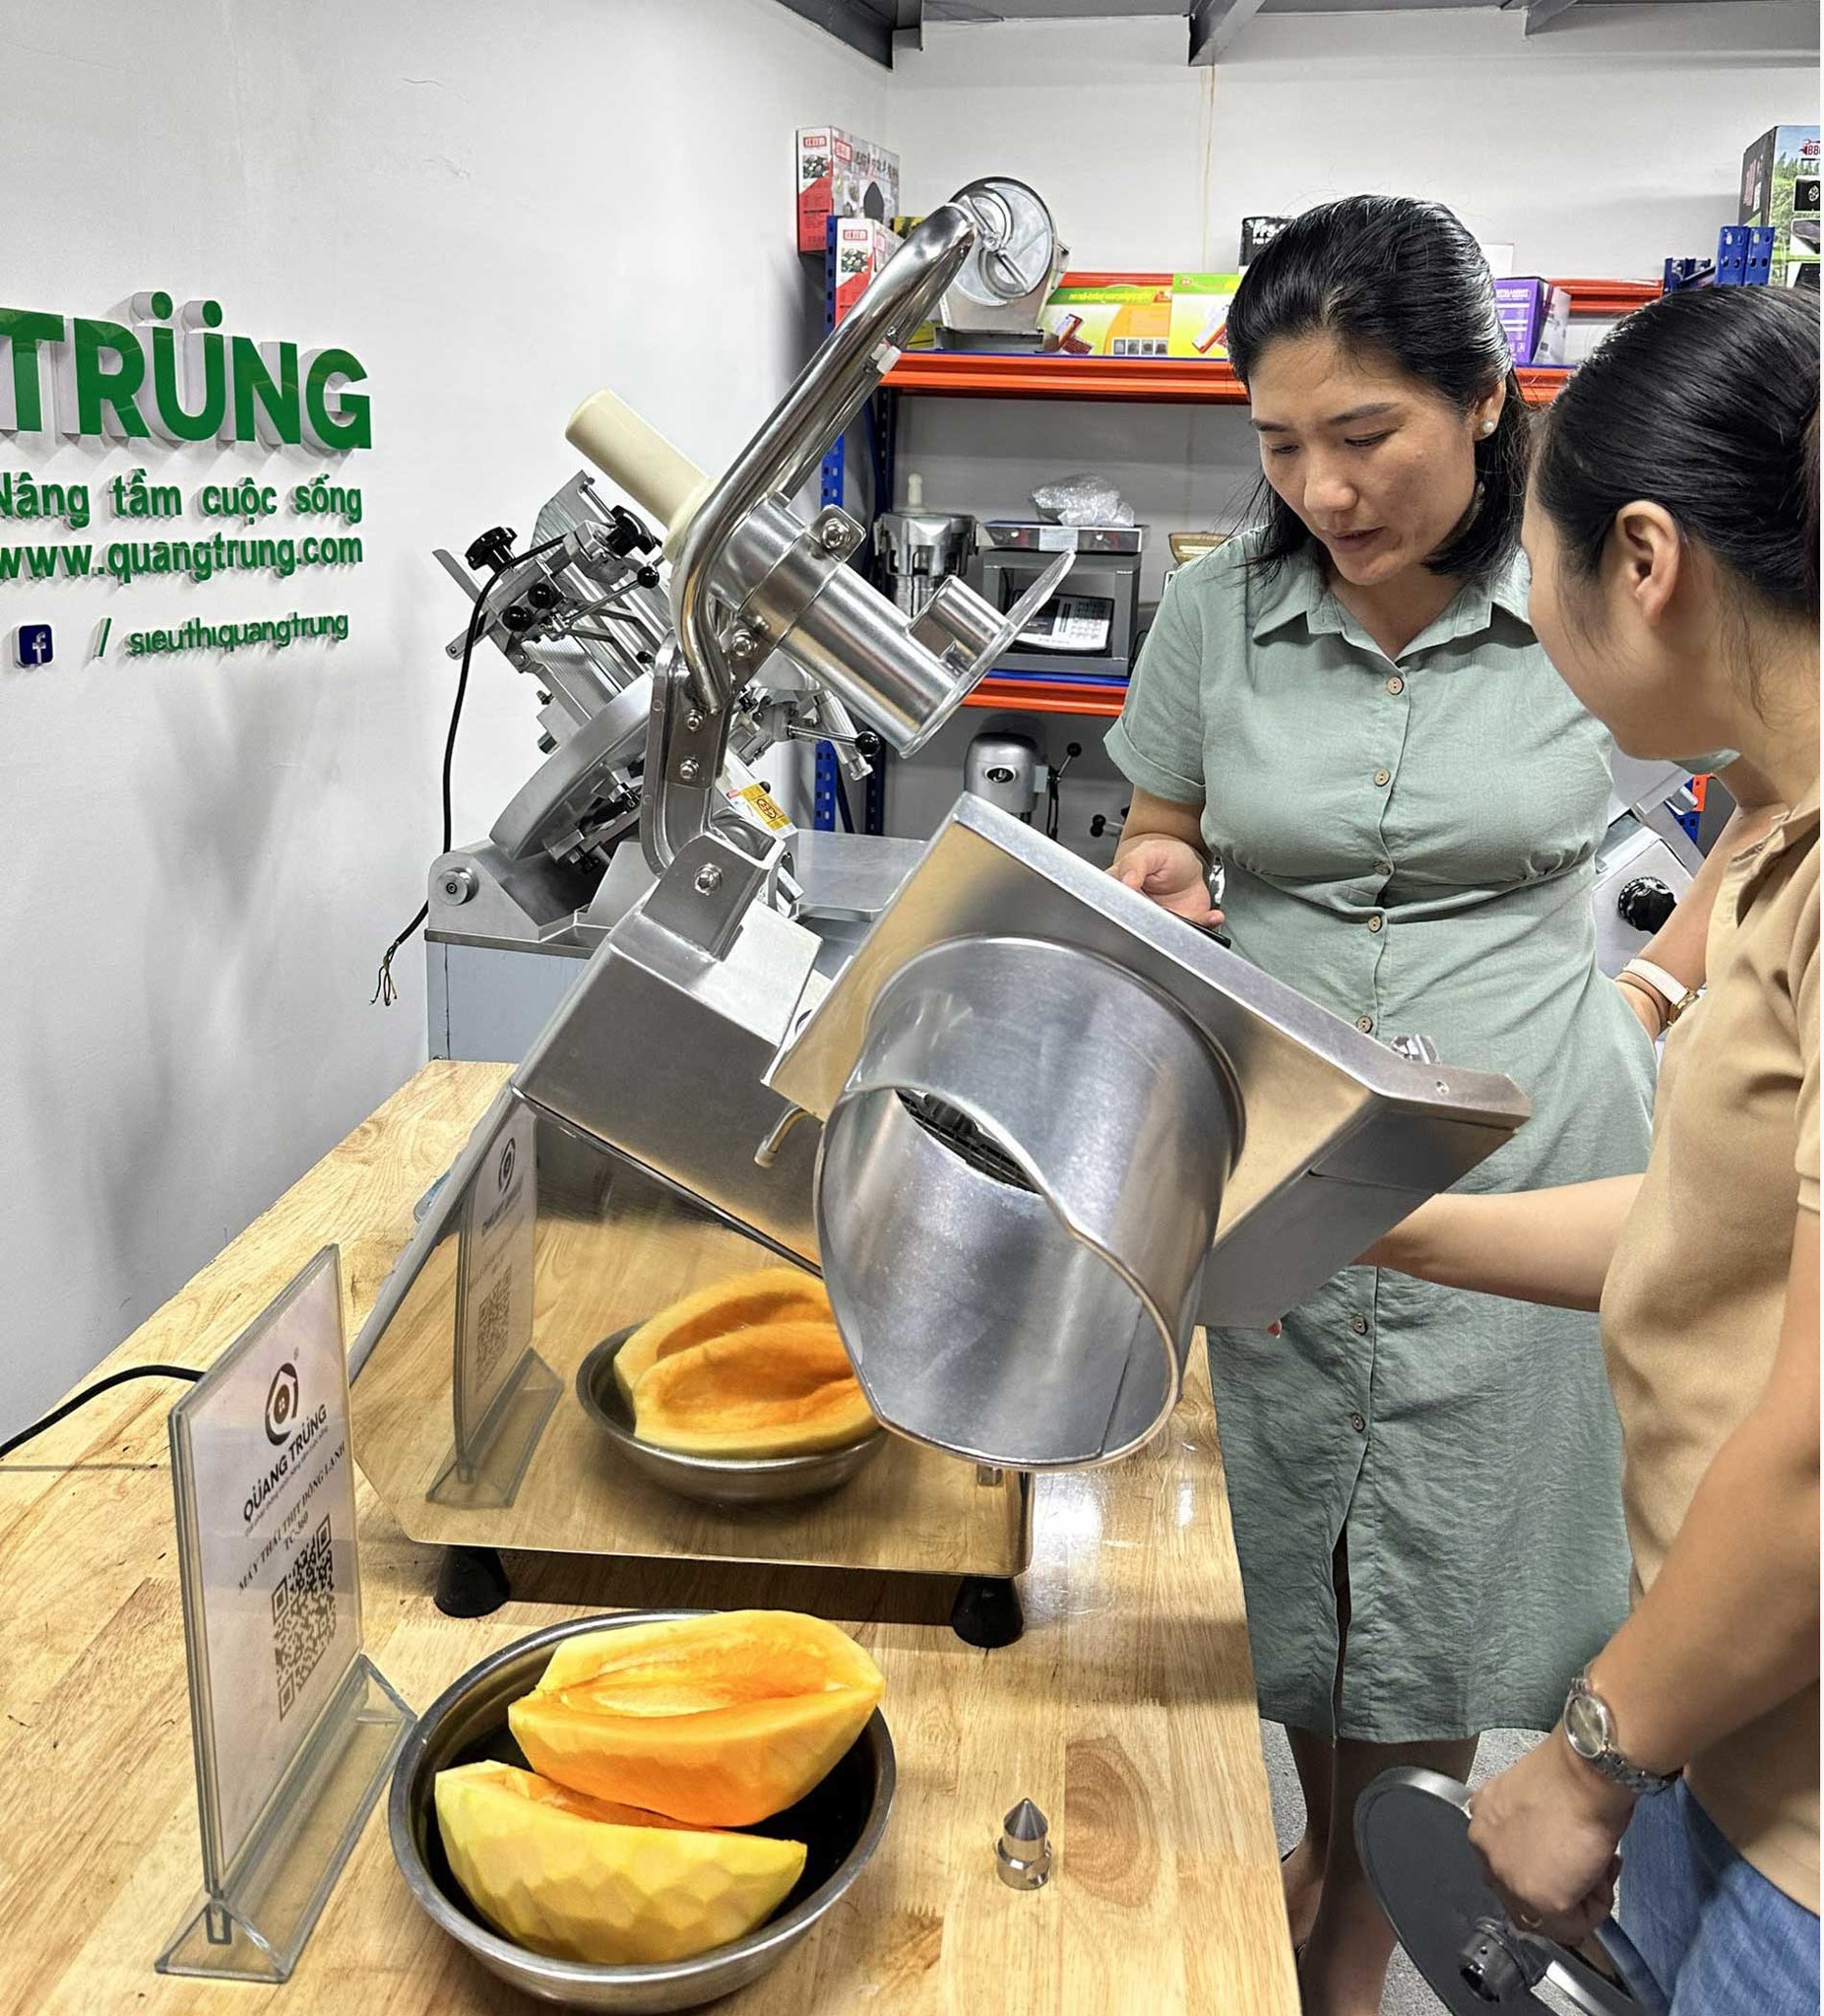 Chị Linh hài lòng với máy thái rau củ công nghiệp từ Quang Trung